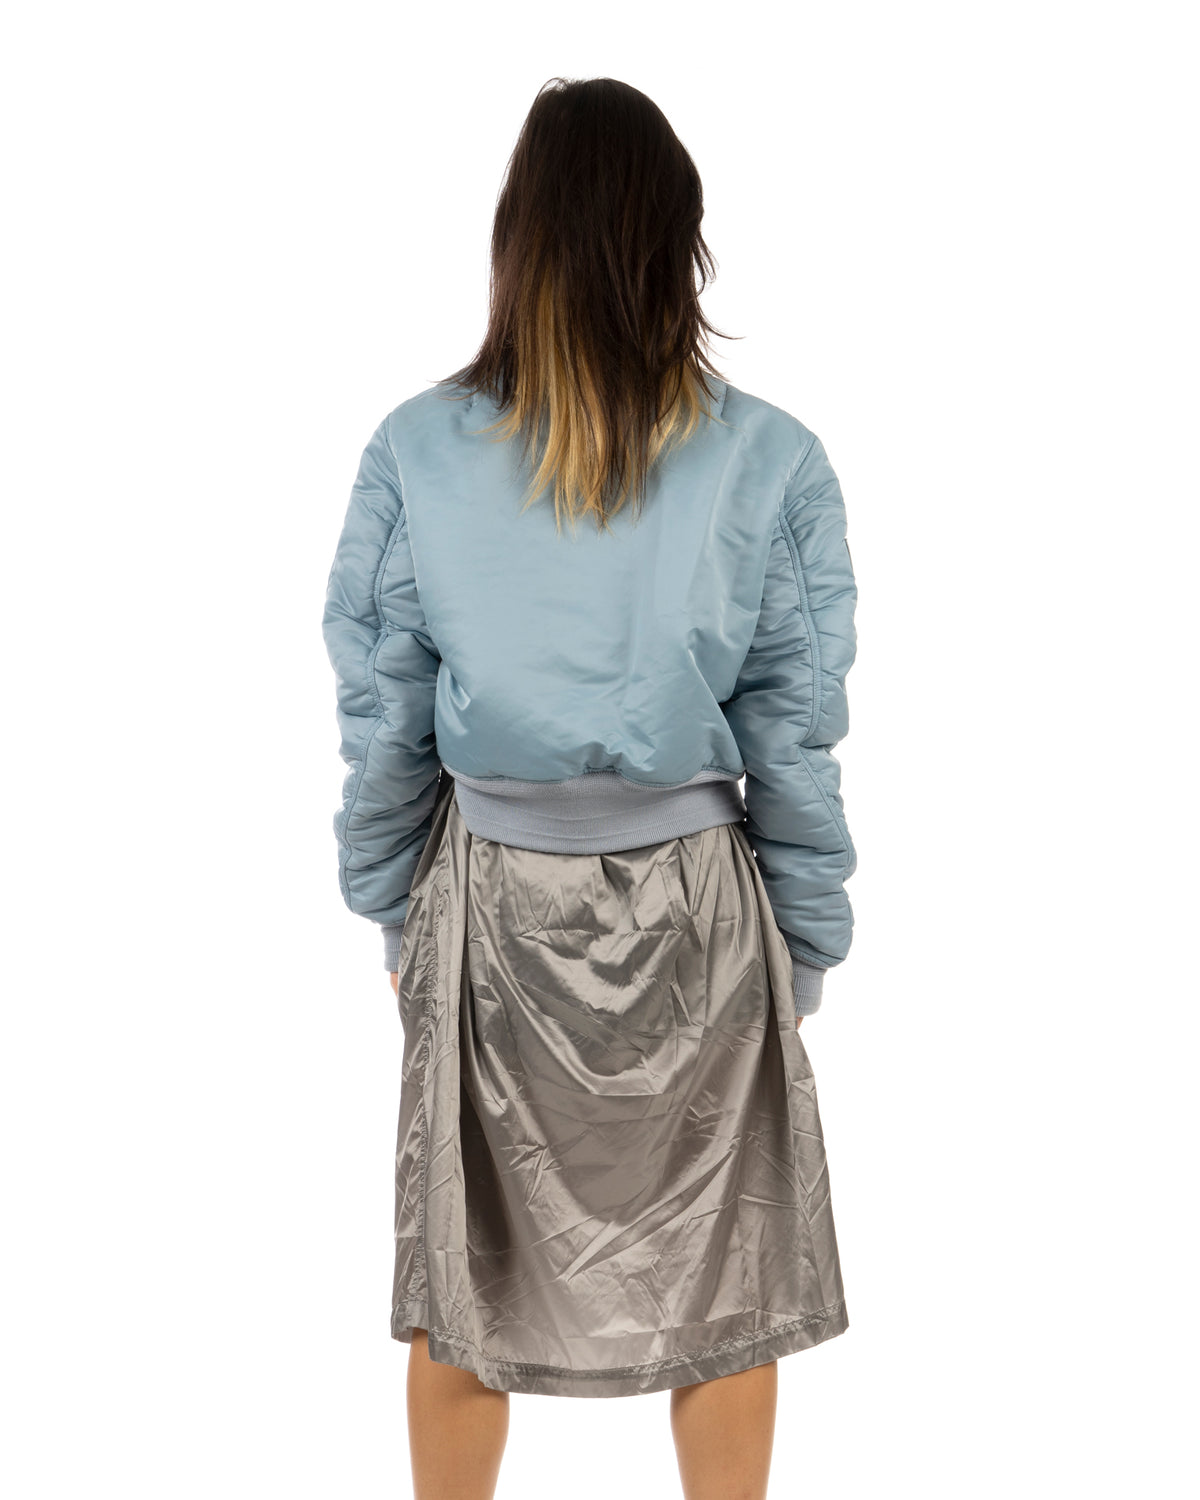 Duran Lantink for Concrete | Bomber Dress Blue / Silver - Concrete